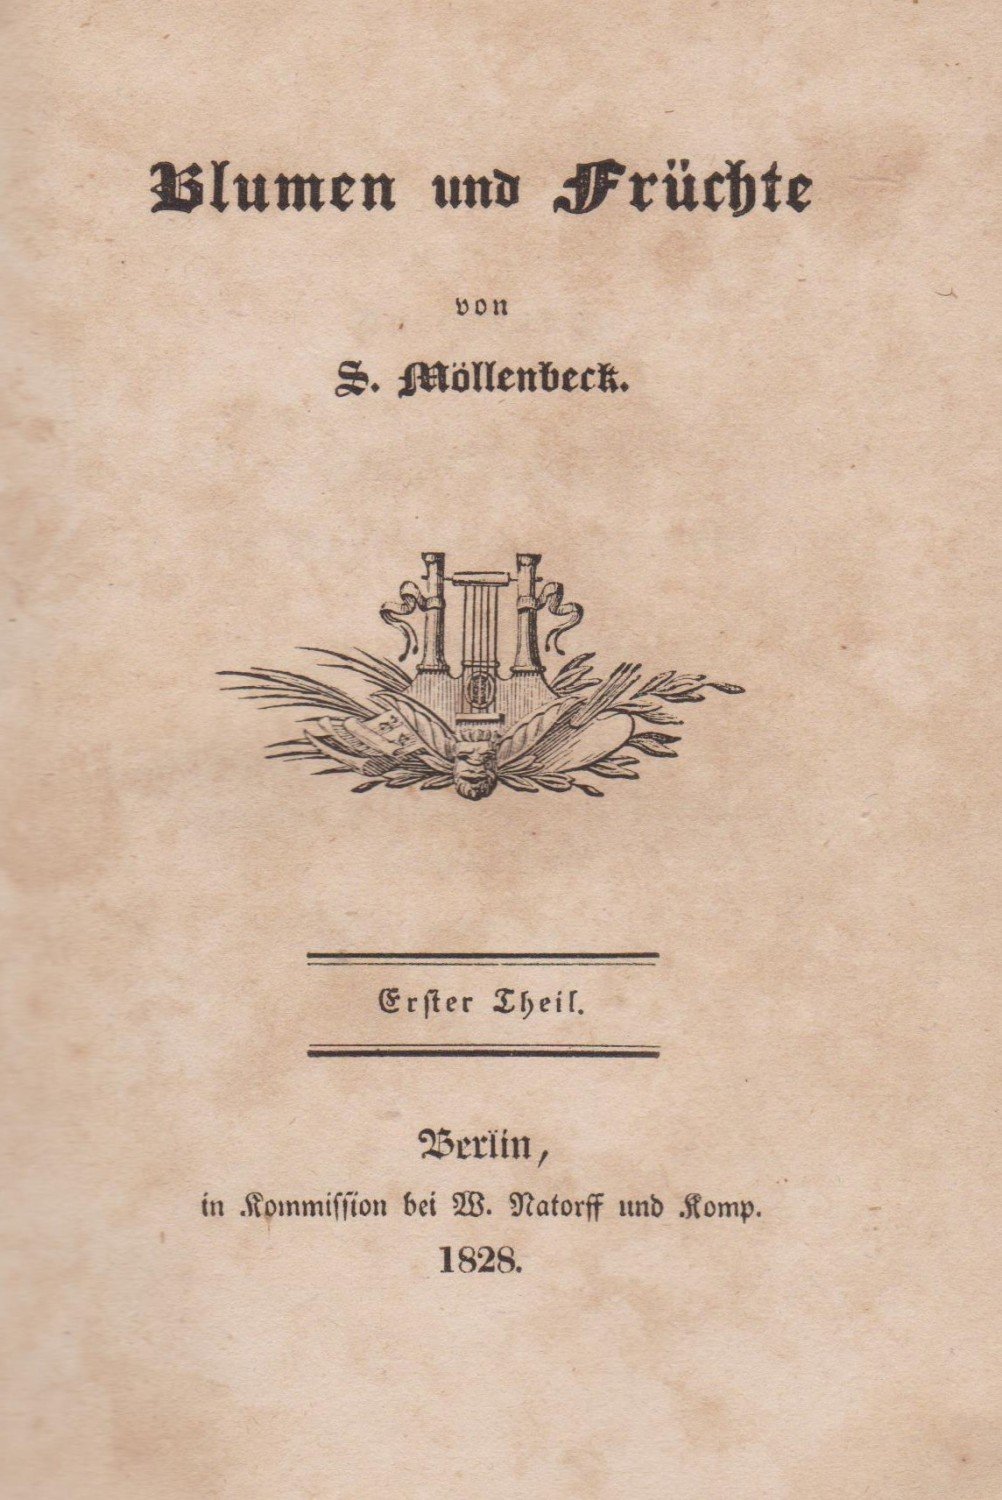 MÖLLENBECK, S. (Johann Samuel):  Blumen und Früchte. Erster Theil. 